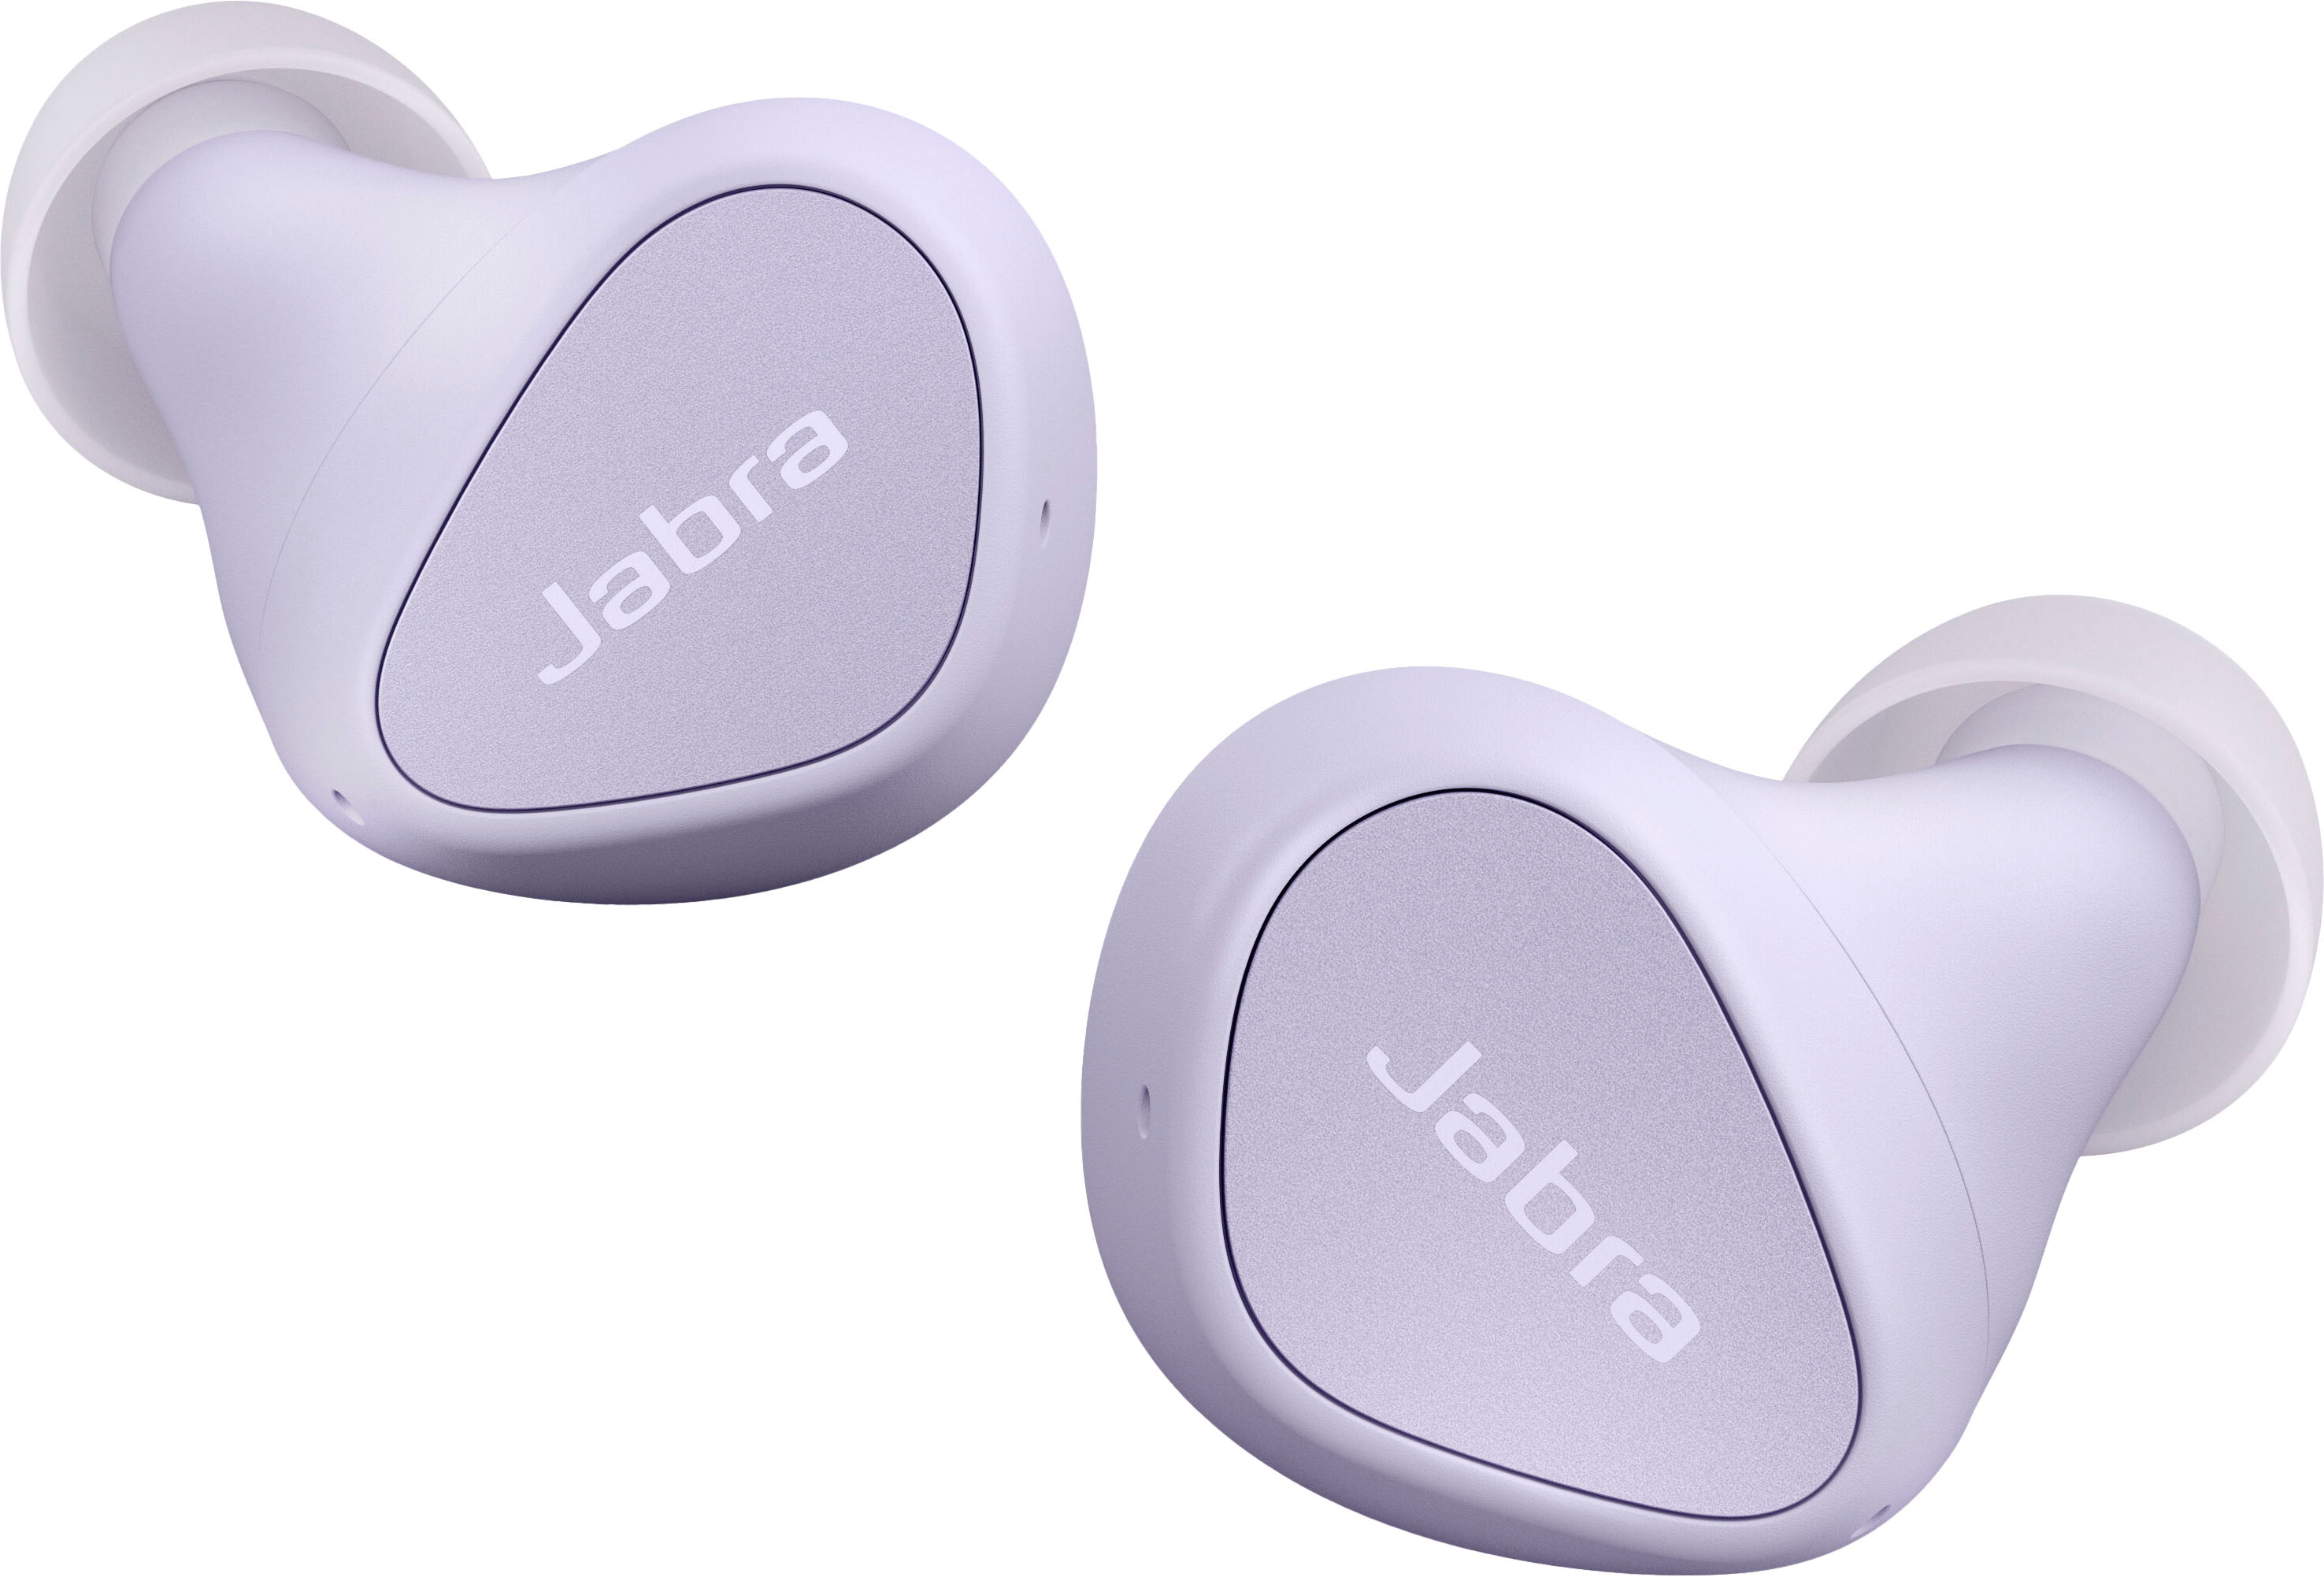 Jabra Elite 4 True Wireless Noise Cancelling In-ear Headphones